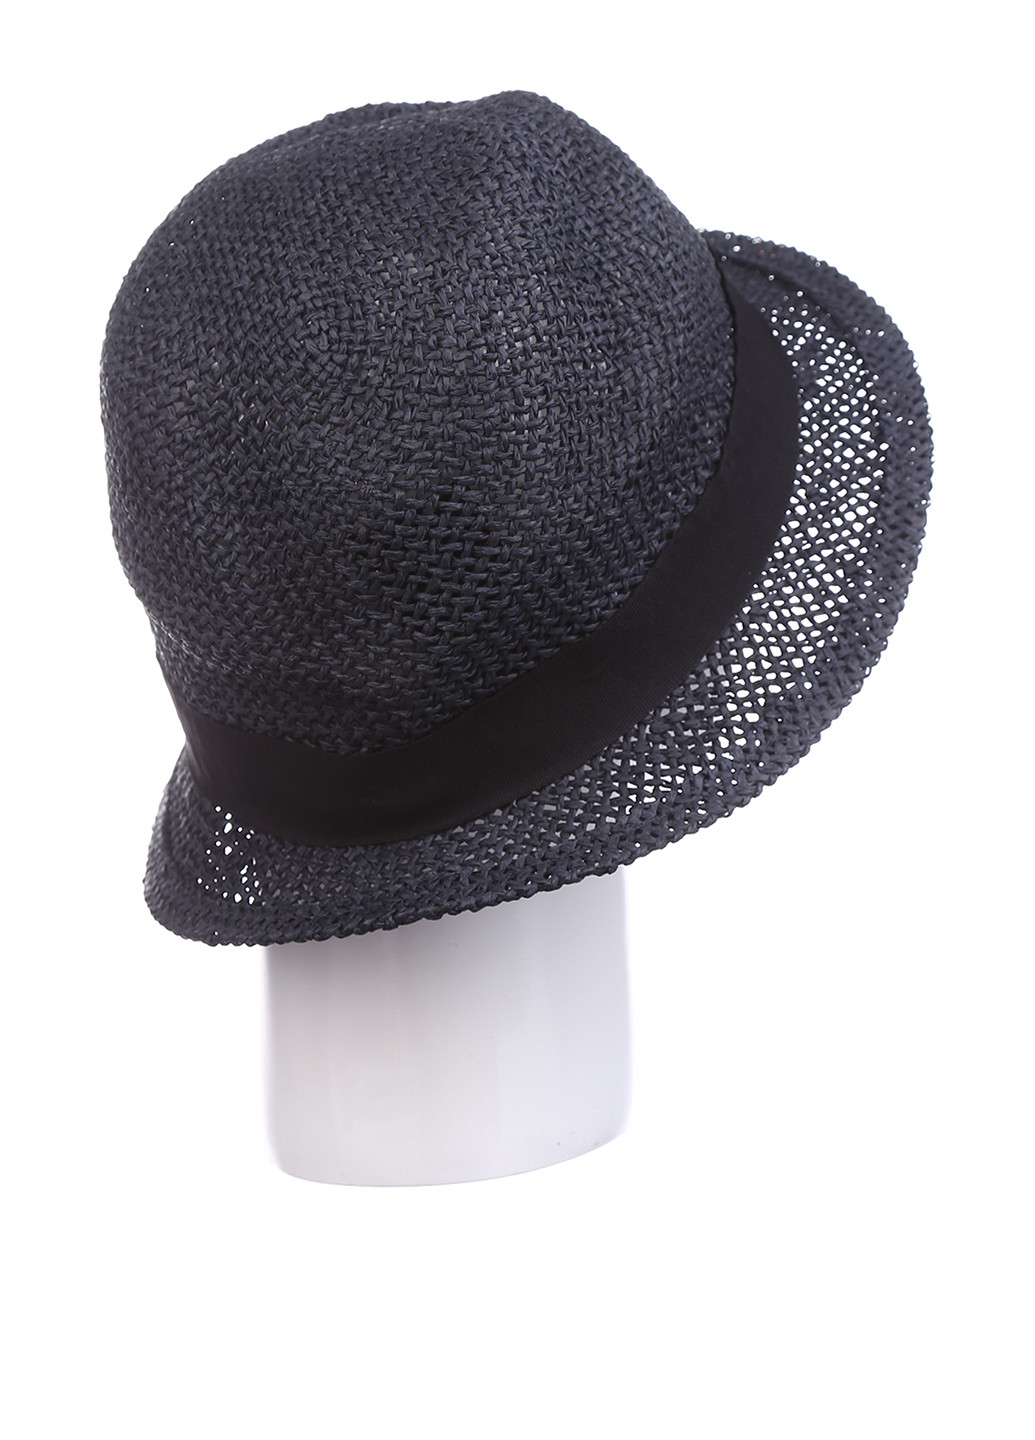 Шляпа H&M однотонная тёмно-синяя кэжуал полиэстер